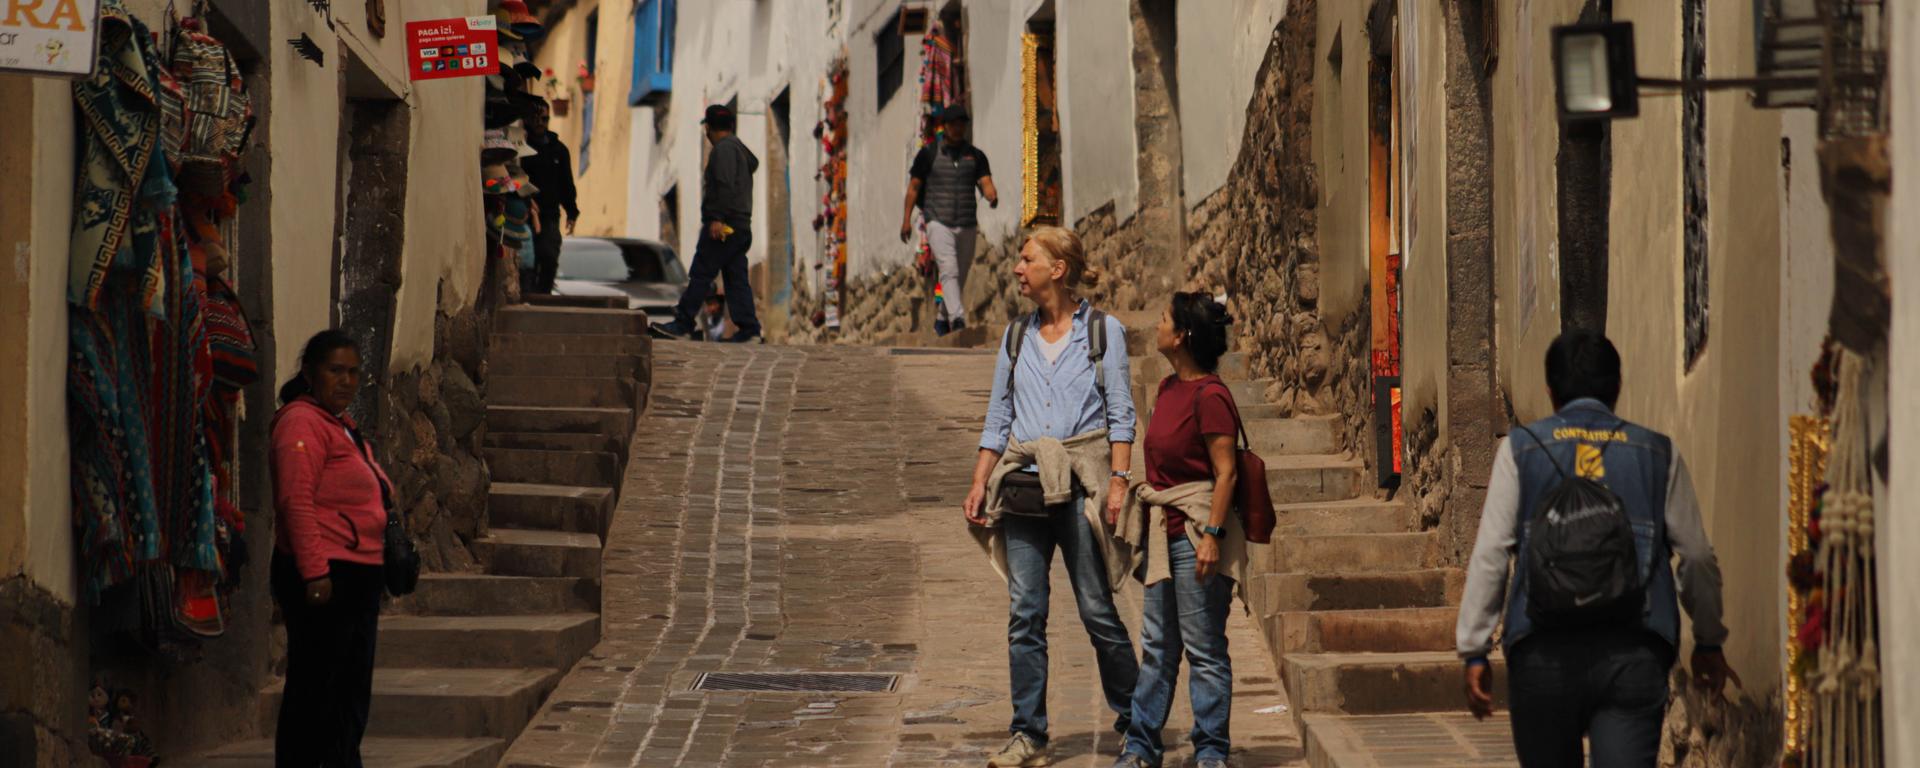 Incertidumbre en calles de Cusco: crónica de una ciudad sin turistas y en crisis que intenta salvar su imagen